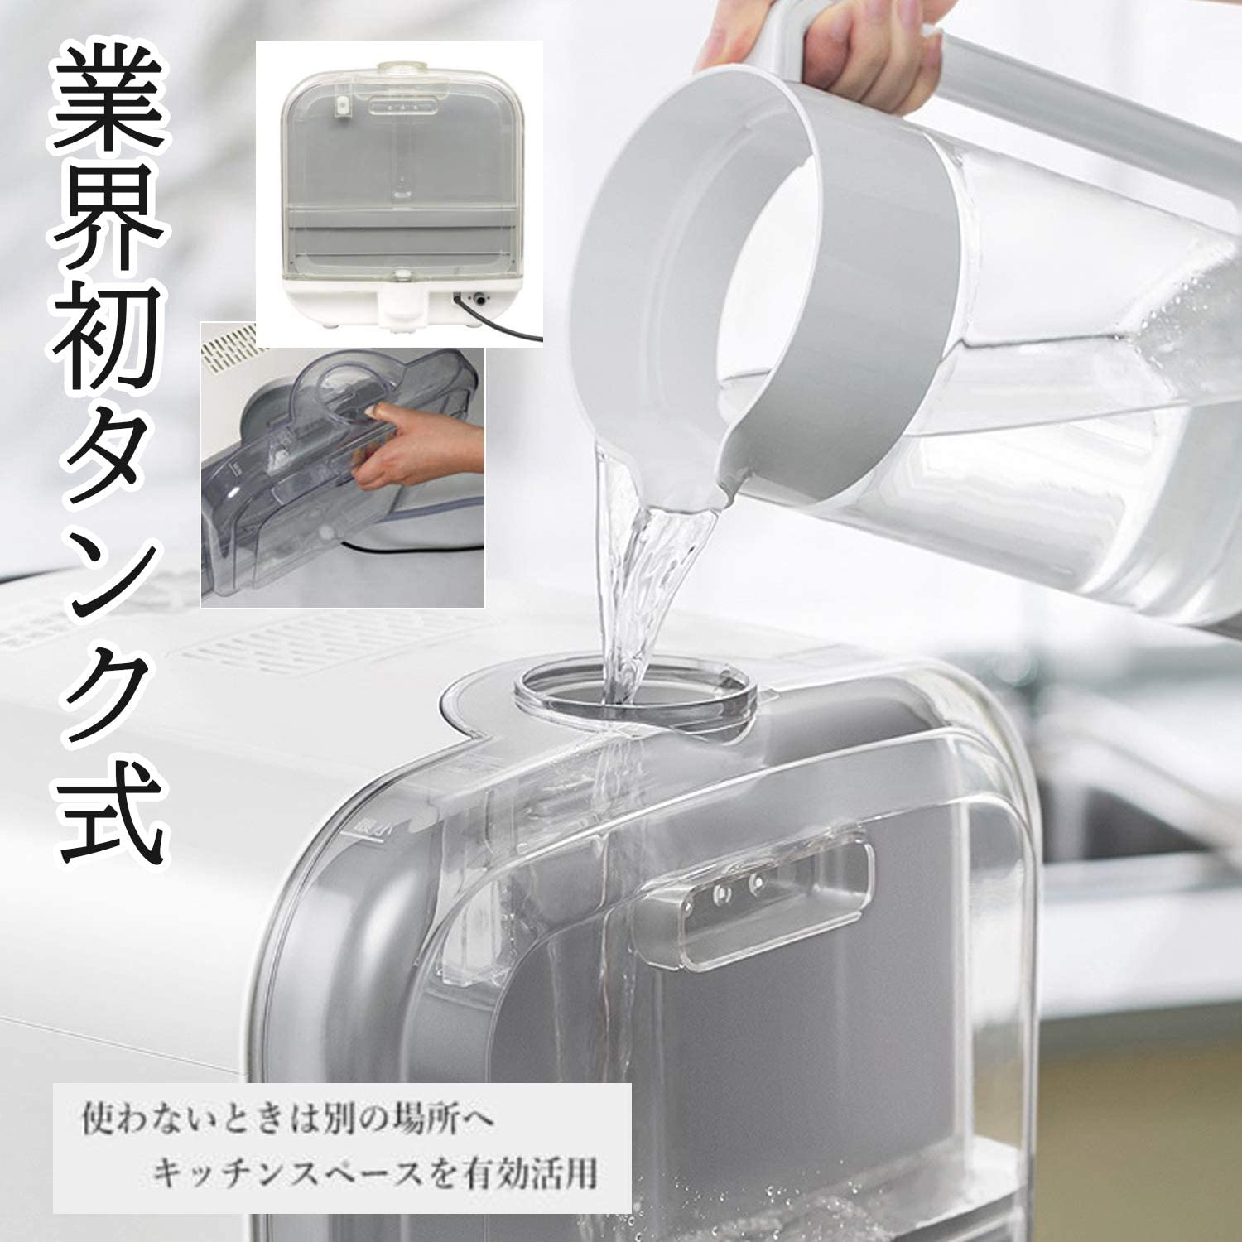 TDP(ティーディーピー) 食器洗い乾燥機 g004(ホワイト)の商品画像サムネ2 